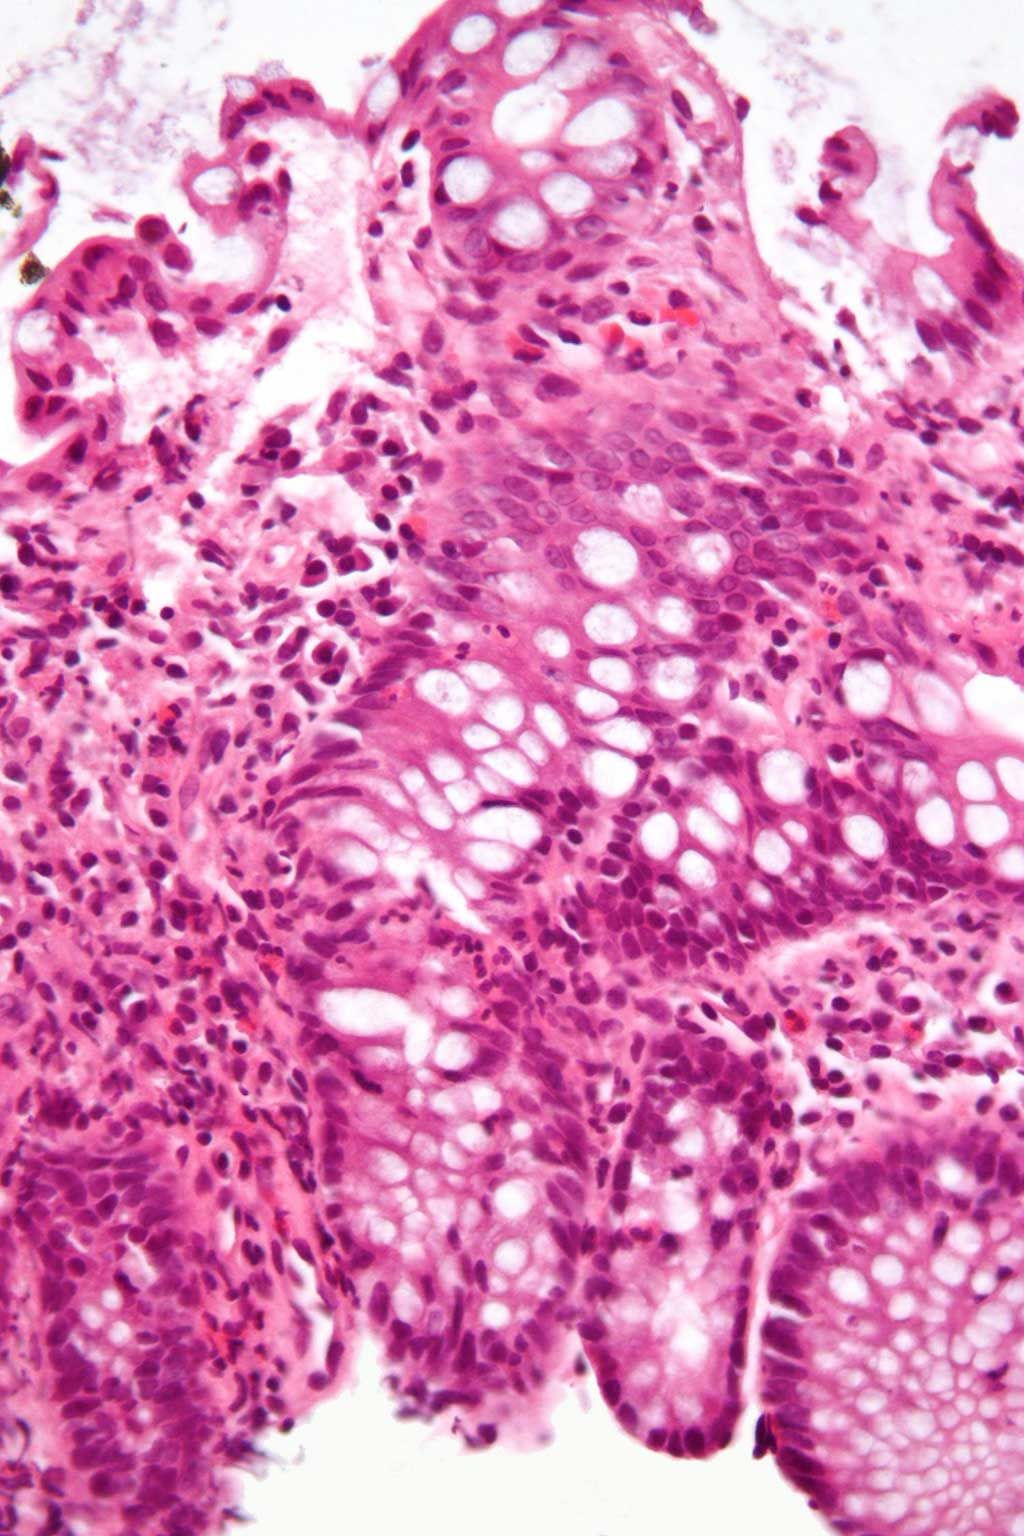 Imagen: Microfotografía que muestra la inflamación del intestino grueso en un caso de enfermedad inflamatoria intestinal (Fotografía cortesía de Wikimedia Commons)